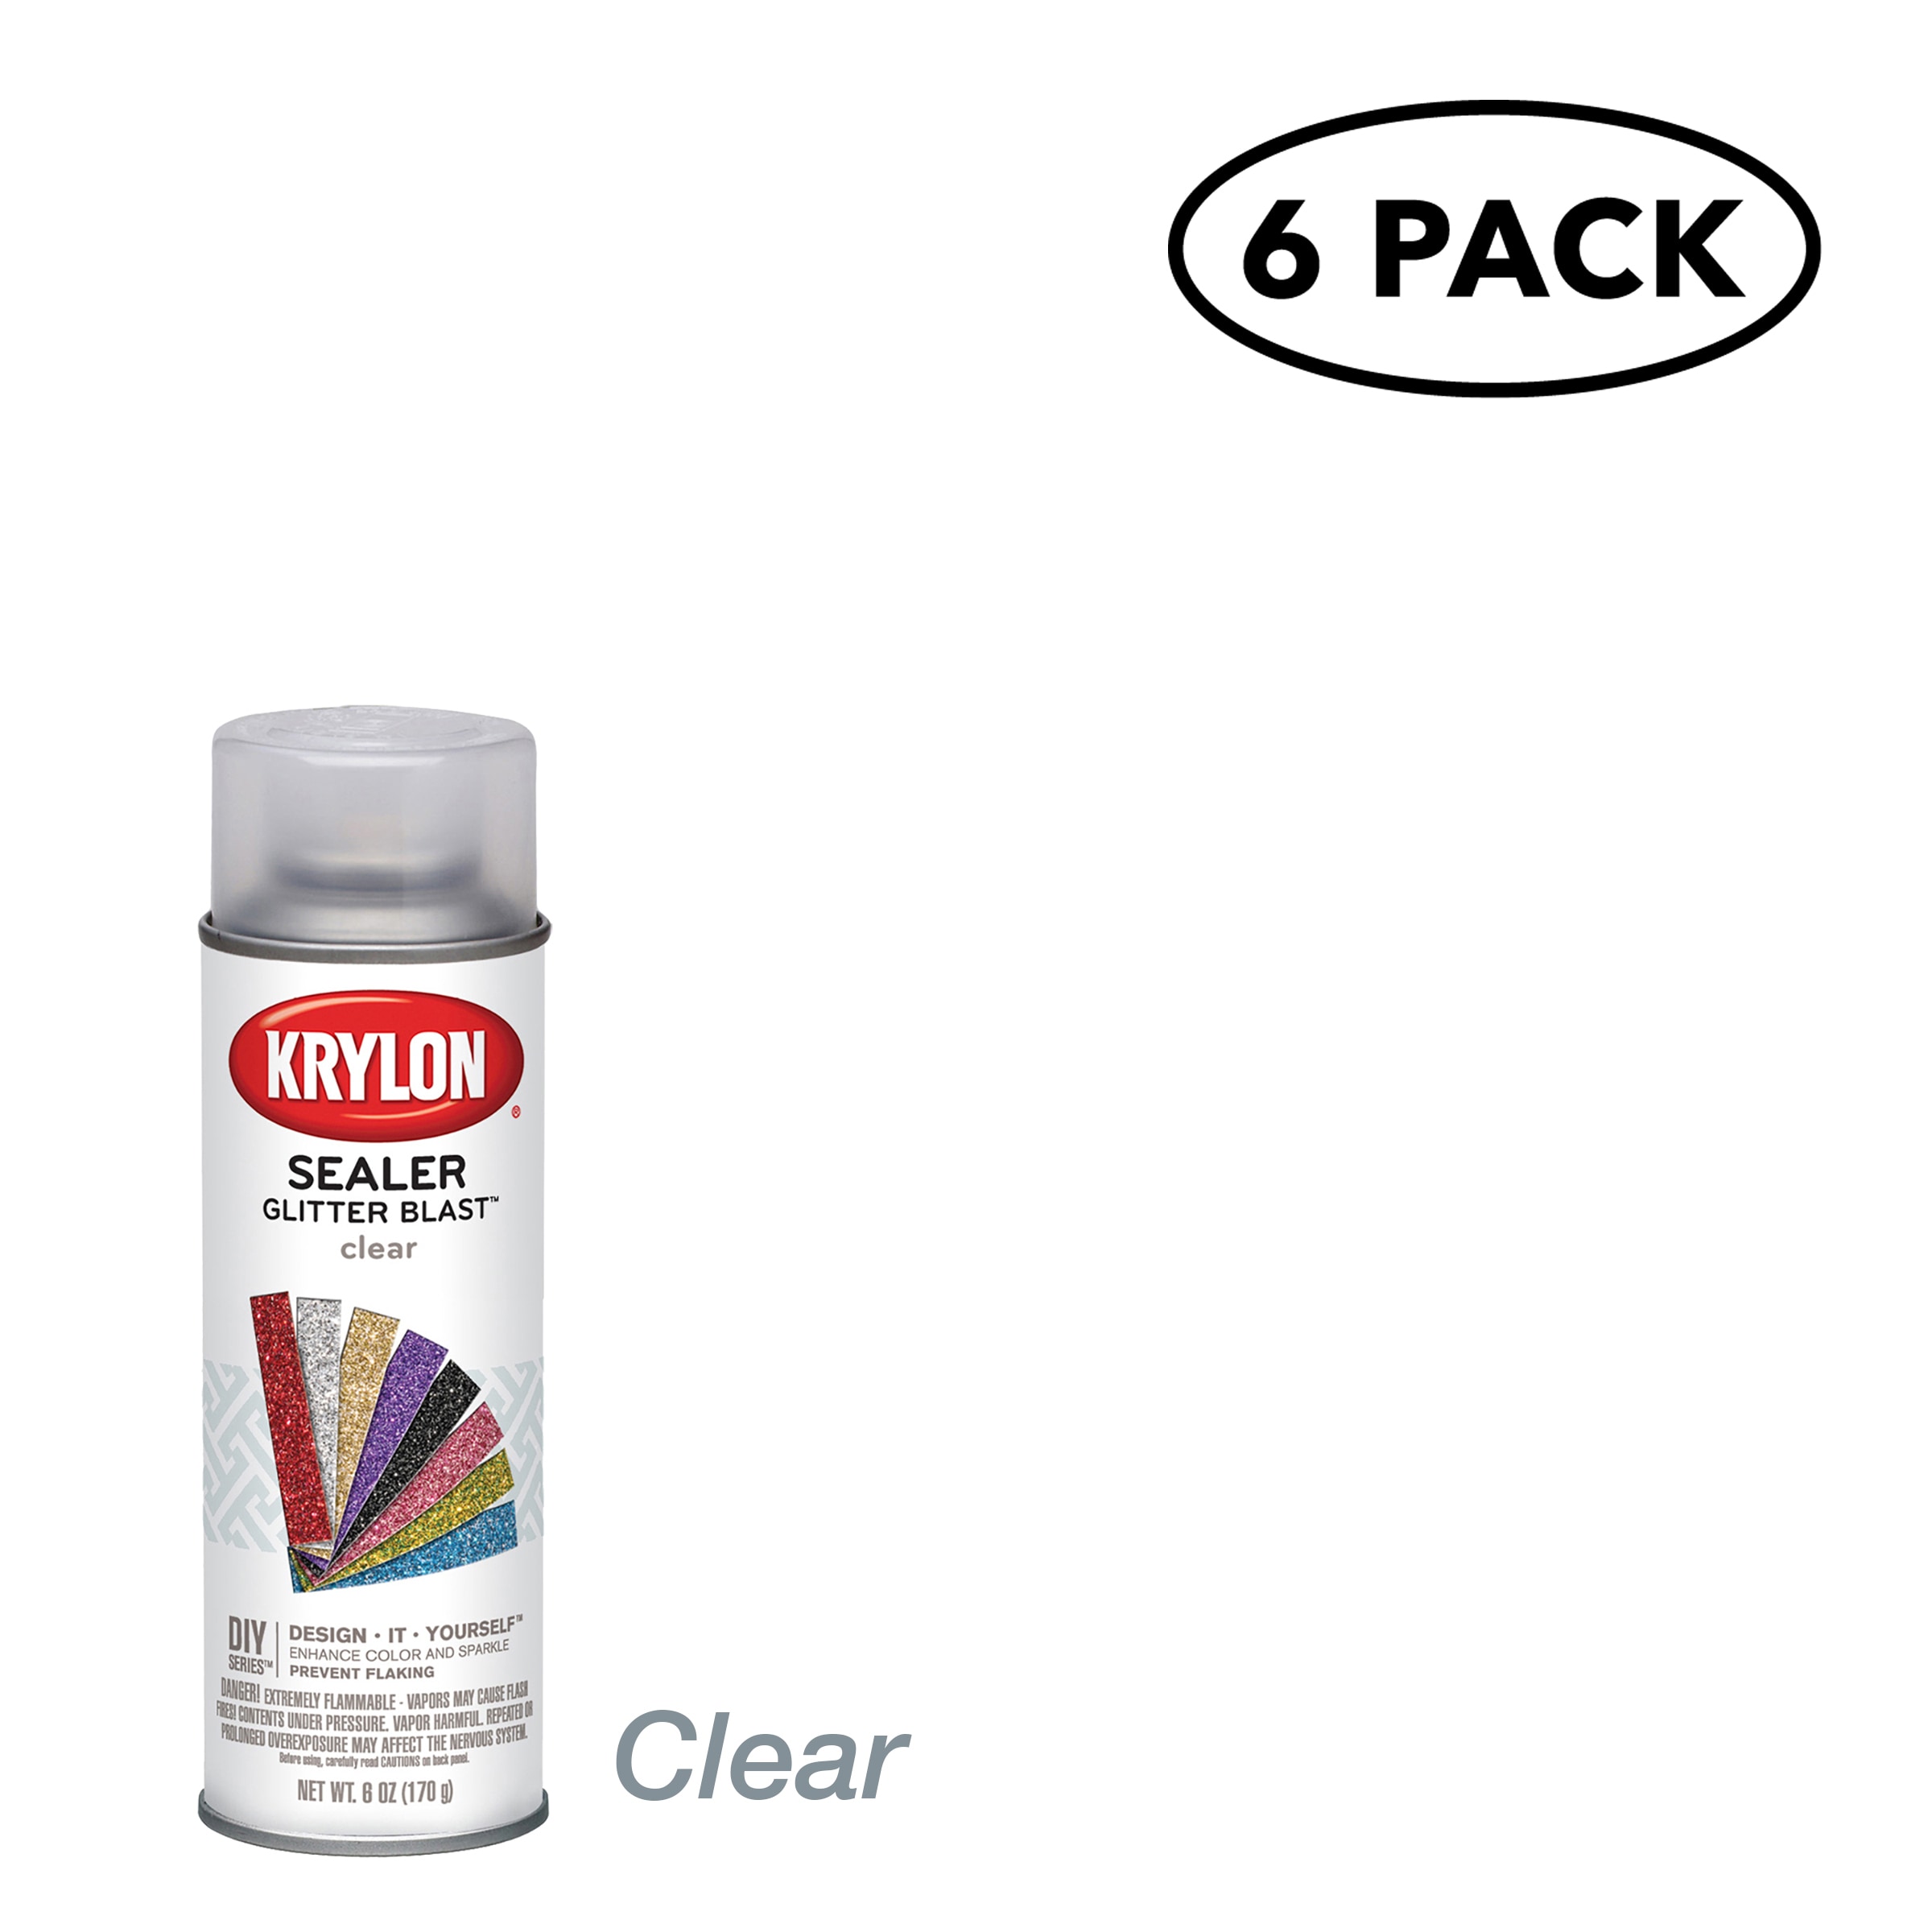 Clear Acrylic Spray Paint at